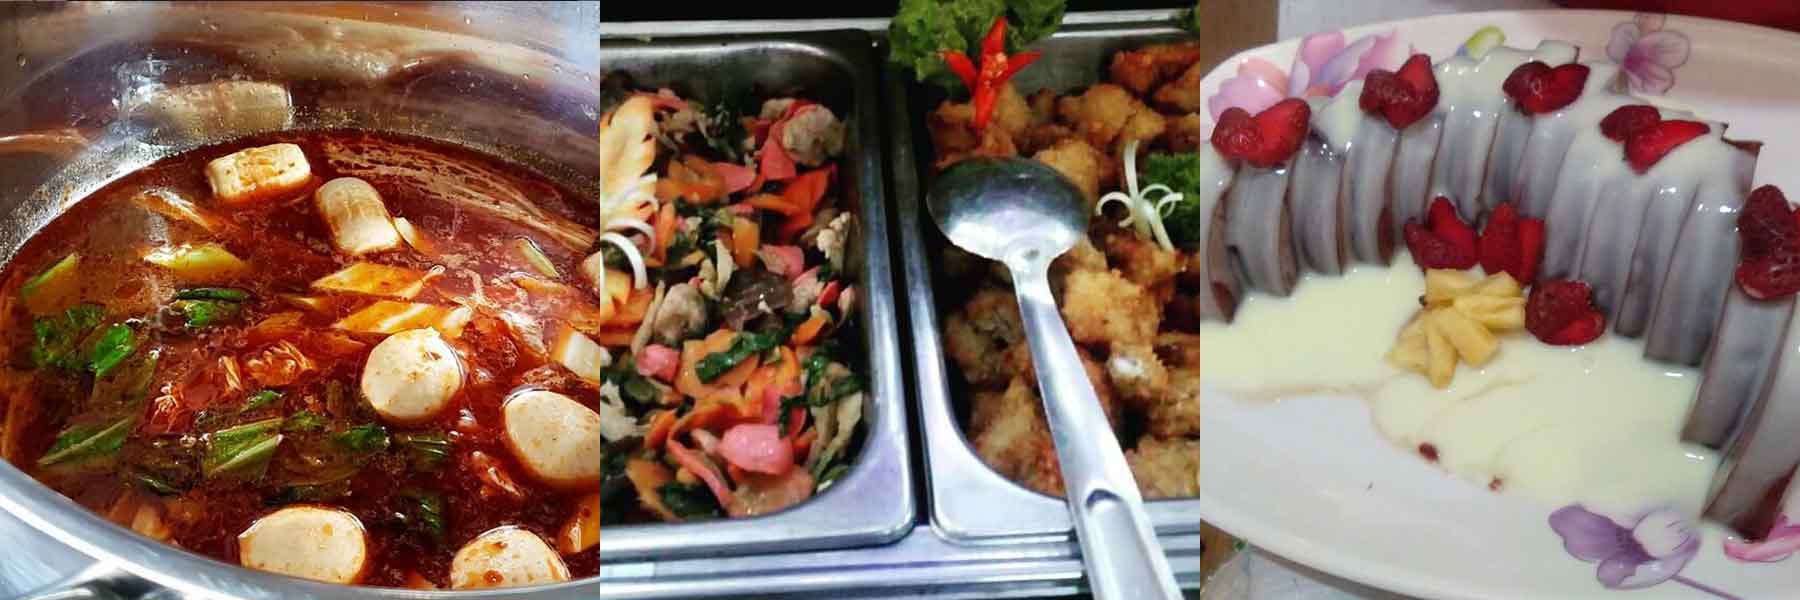 menu catering harian Purwosari - Pasuruan